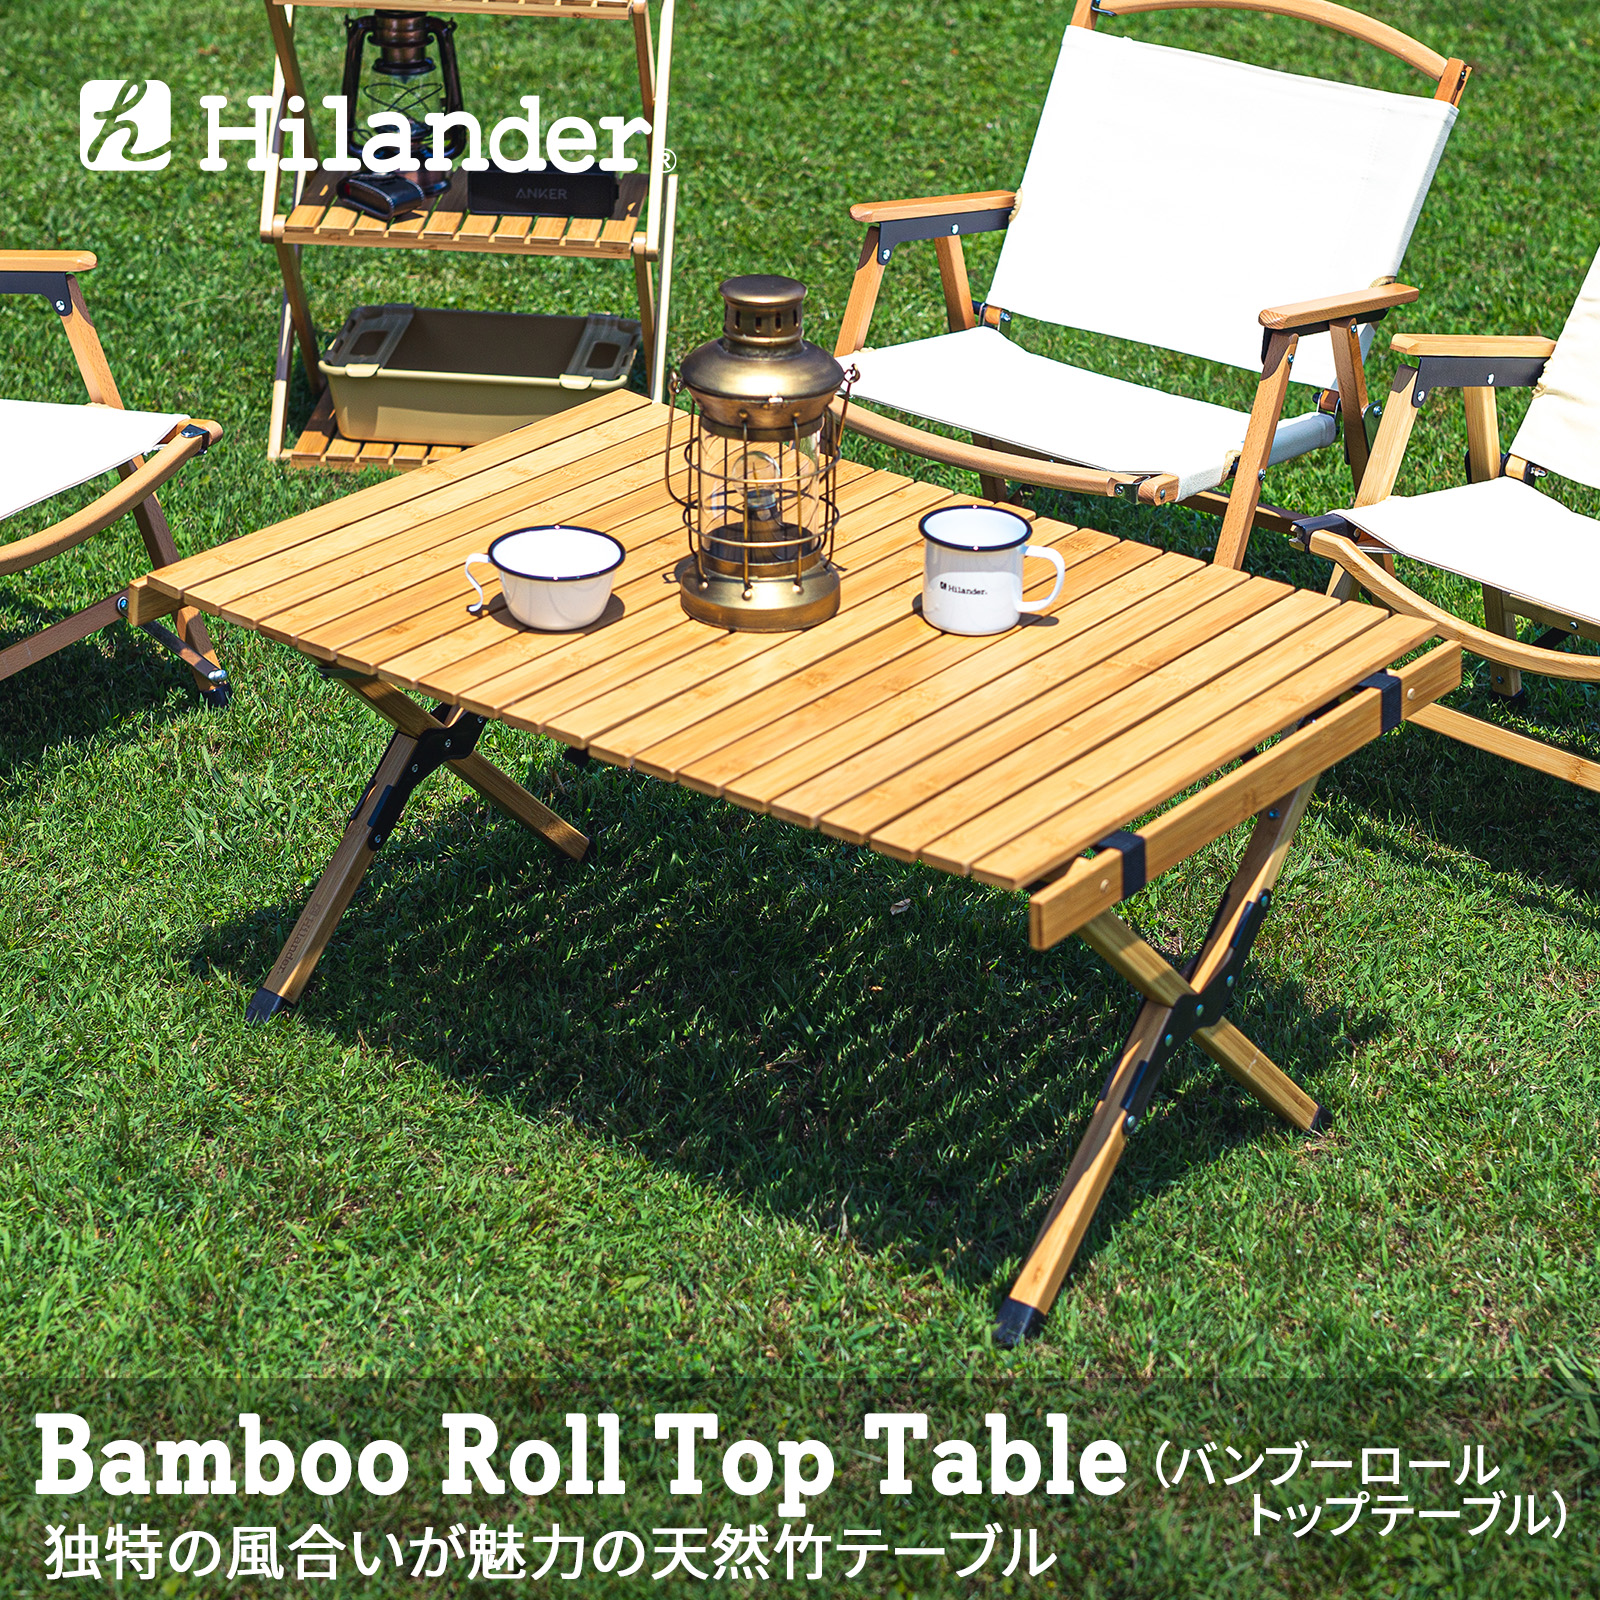 Hilander ハイランダー バンブーロールトップテーブル 90 HCT-007 7000707（ナチュラル） アウトドアテーブルの商品画像